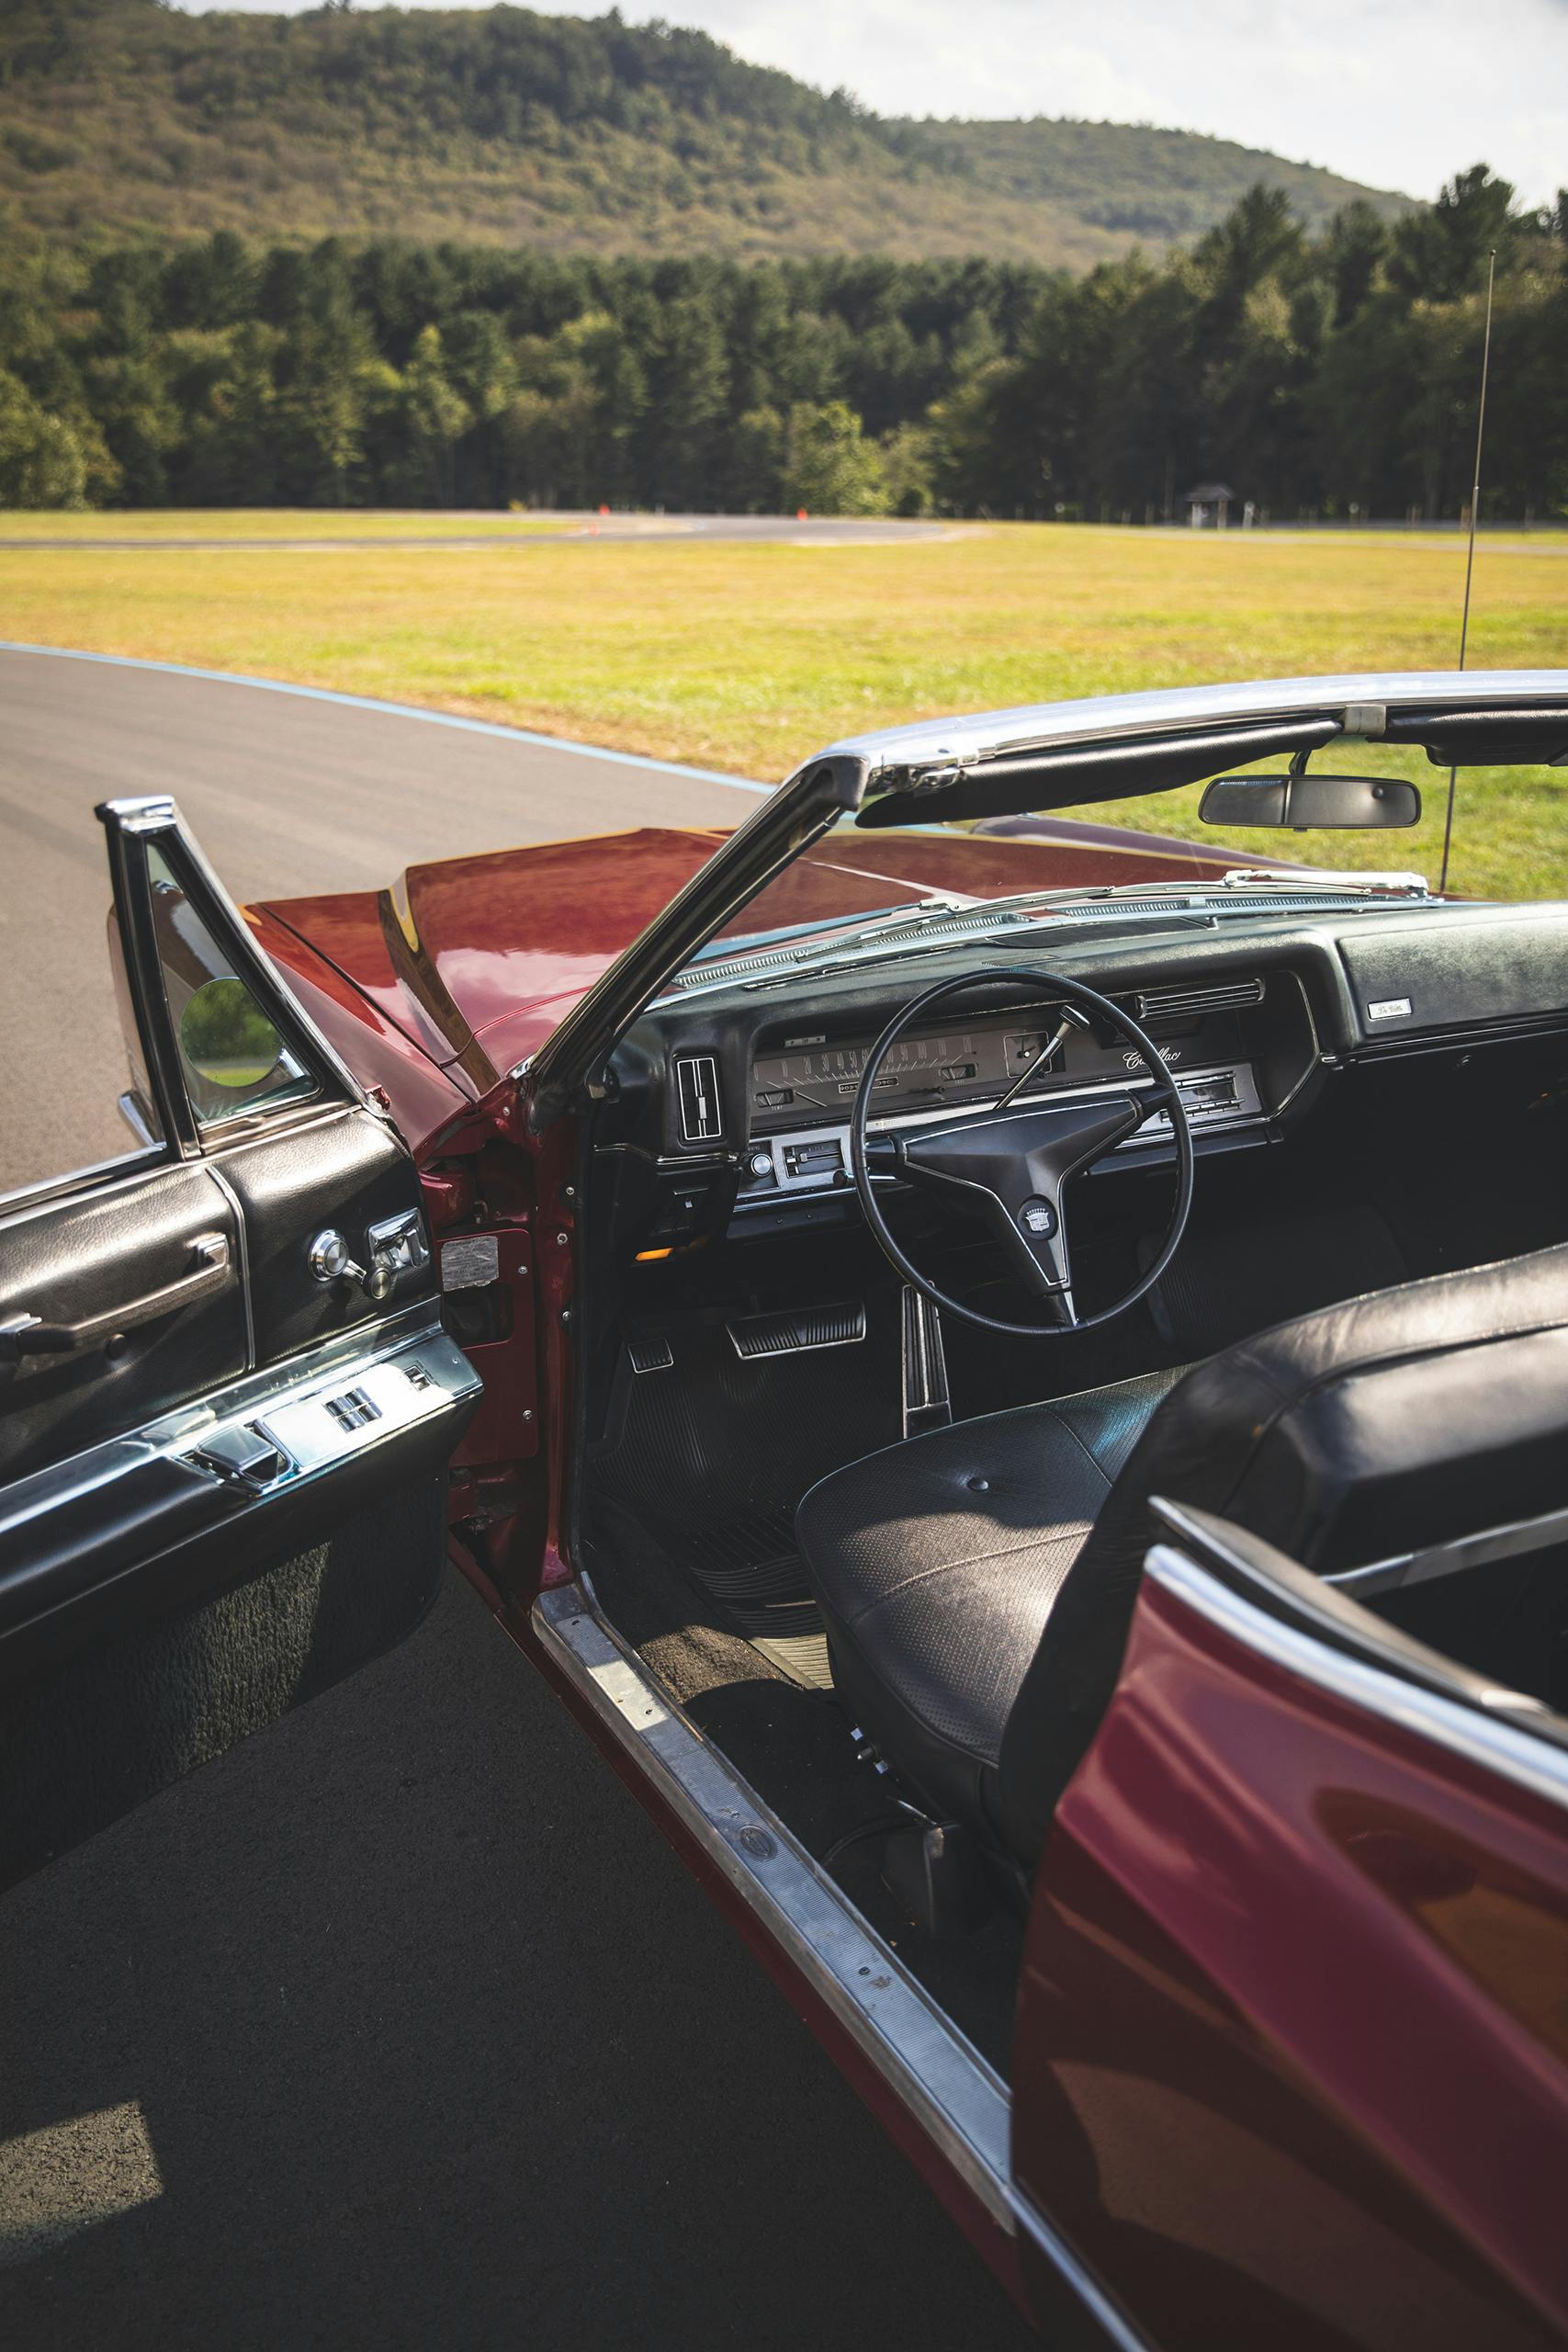 1967 Cadillac DeVille interior doors open vertical